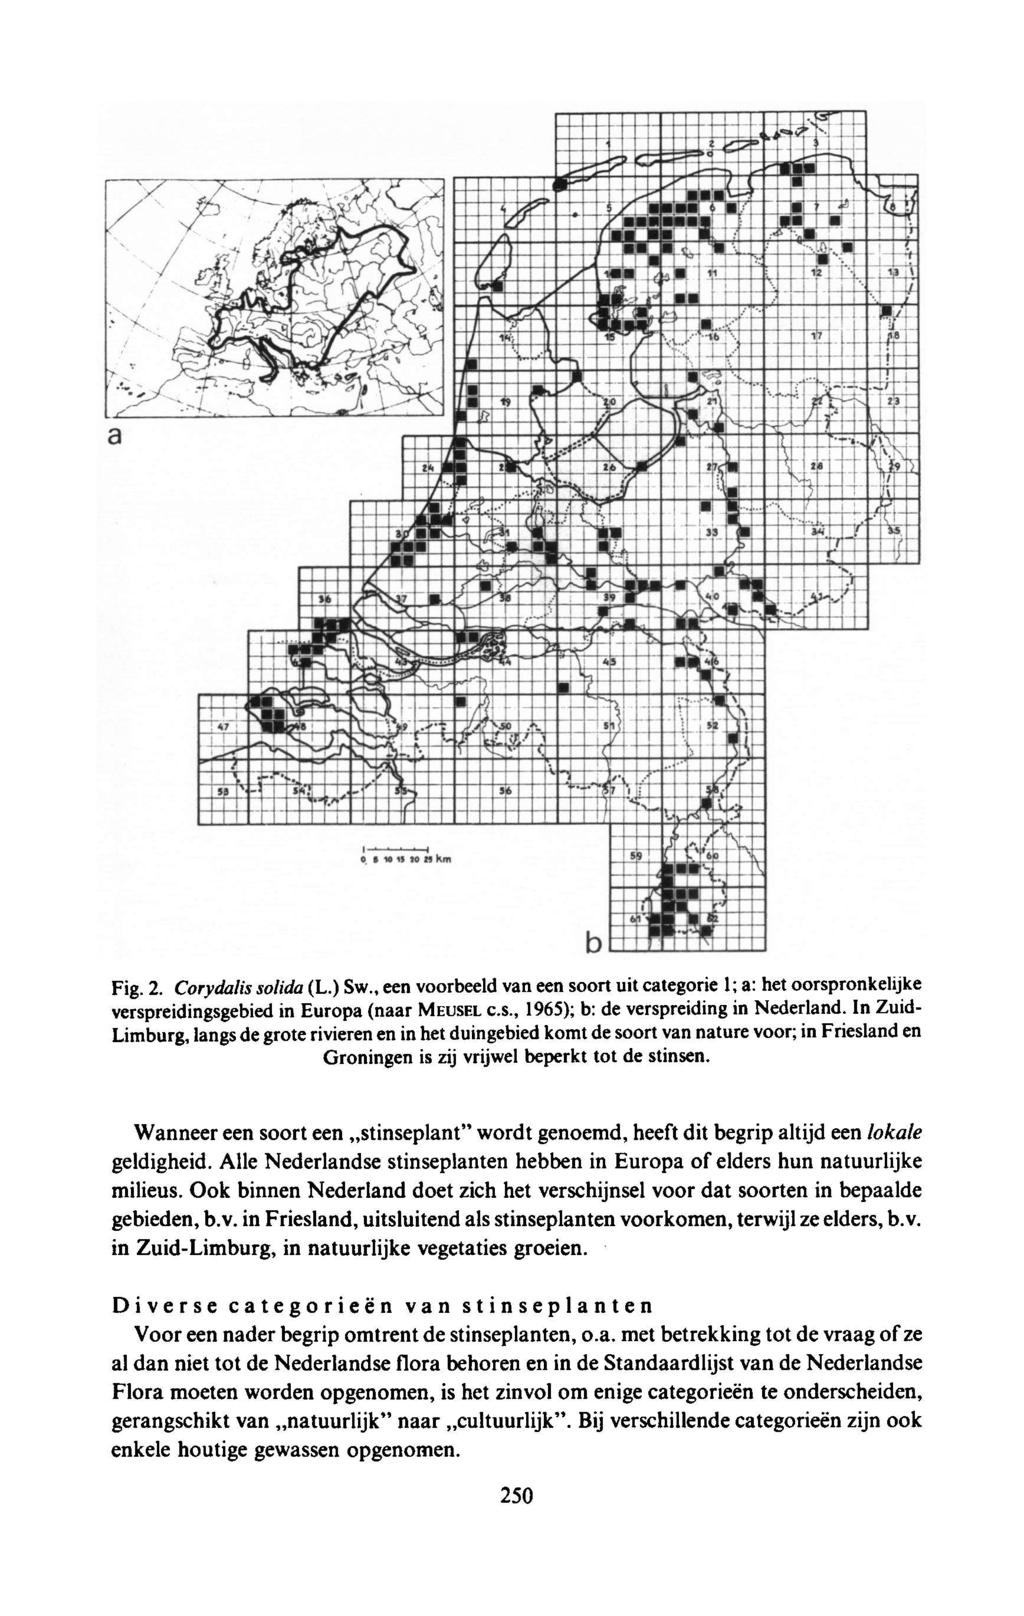 Fig. 2. (L.) Sw., een voorbeeld vaneen soort uit ategorie a: het 1; oorspronkelijke Corydalis solida verspreidingsgebied in Europa (naar MEUSEL C.S., 1965); b: de verspreidingin Nederland.